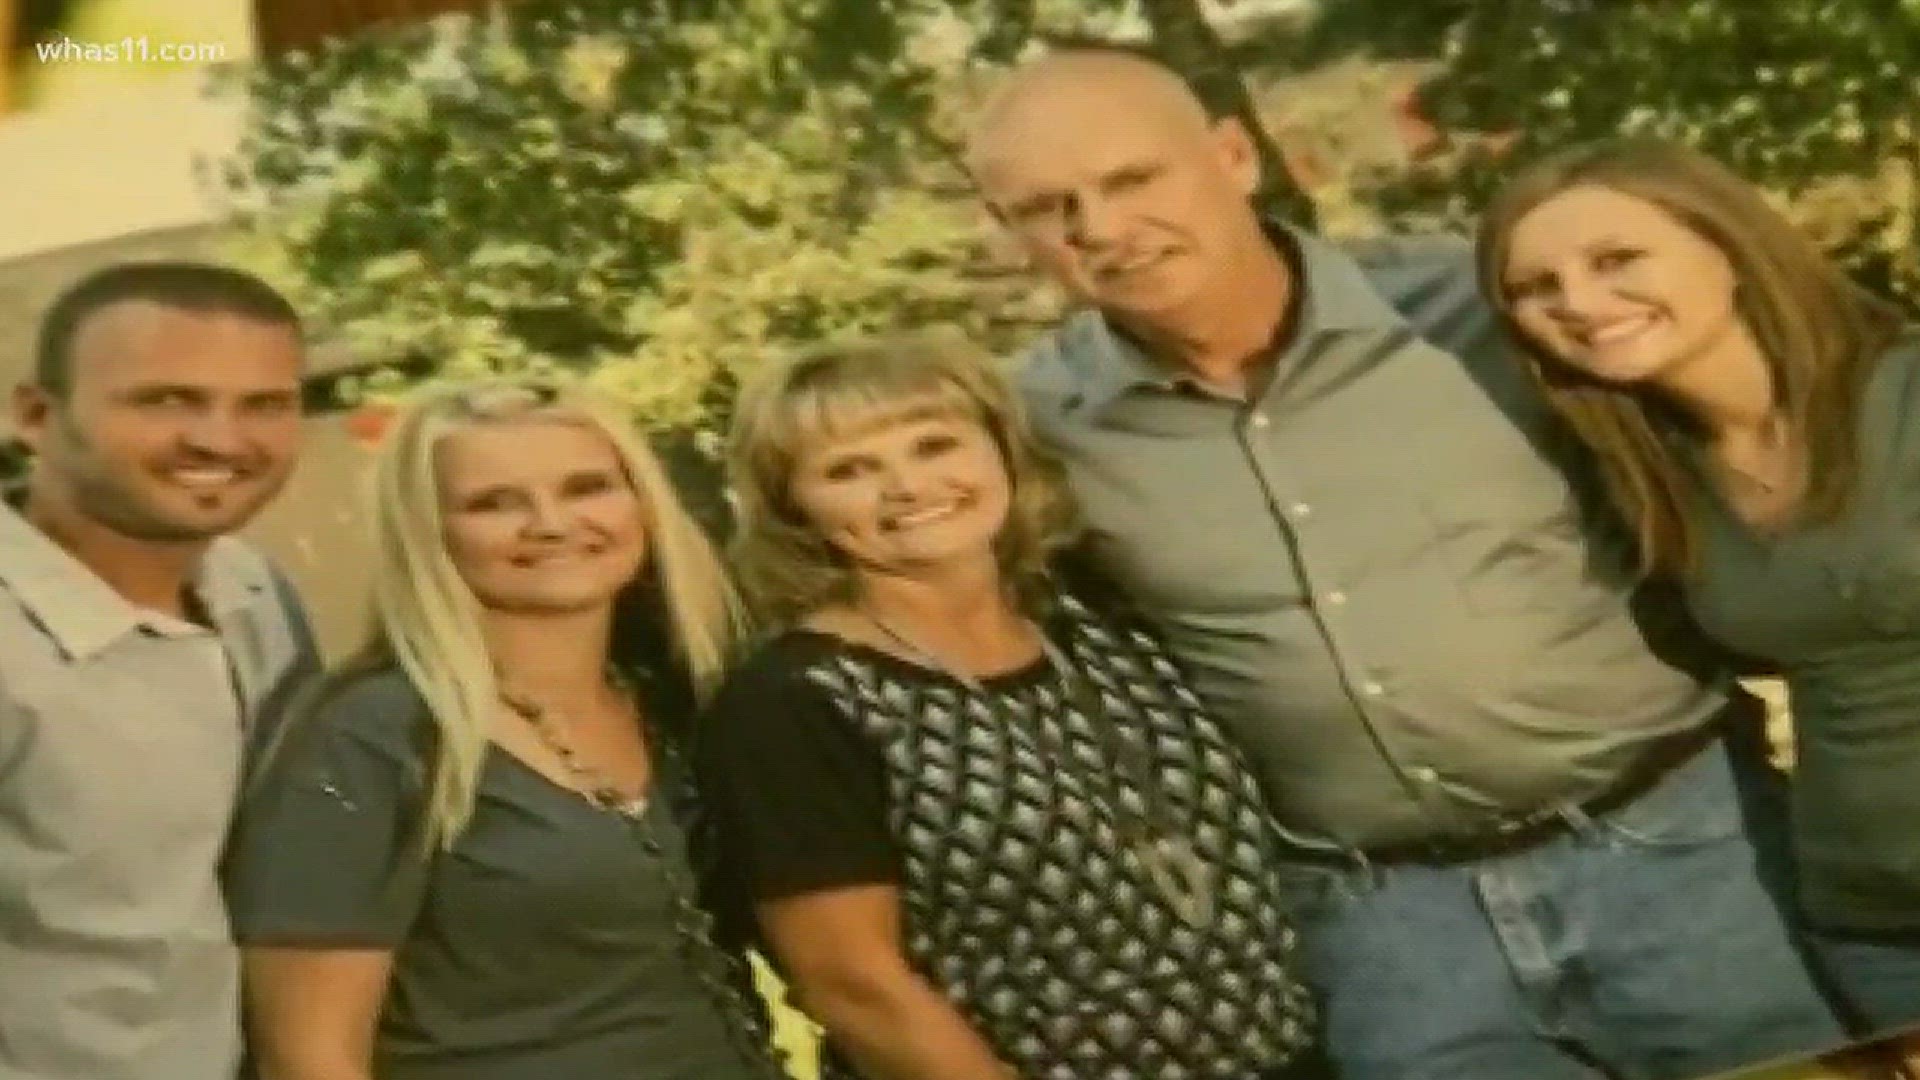 Ballard family asking for help solving cases